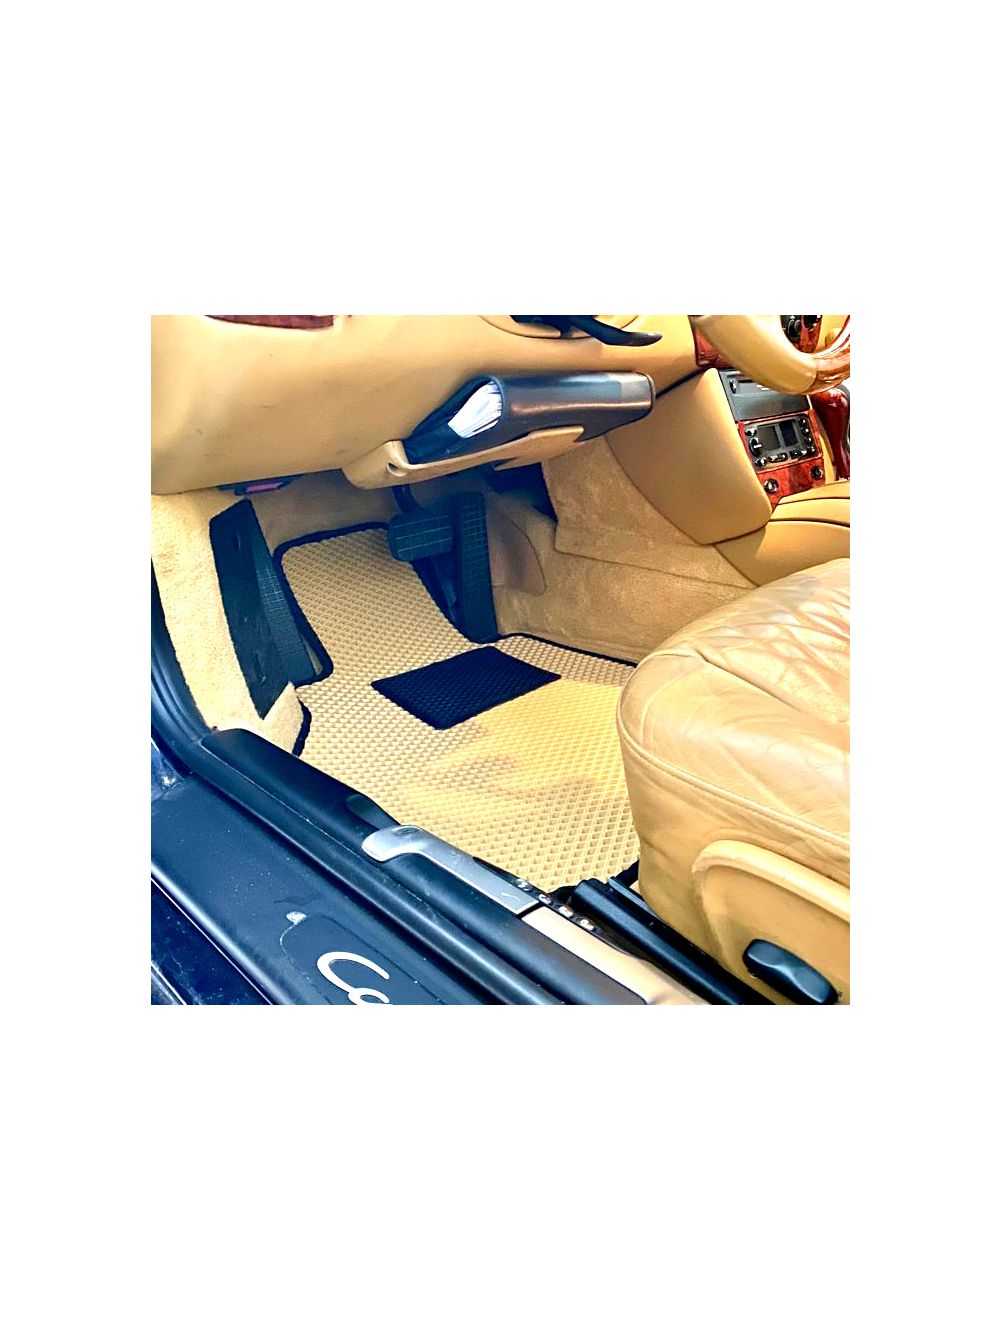 EVA Foam Car Mats - Custom made - 4 piece set